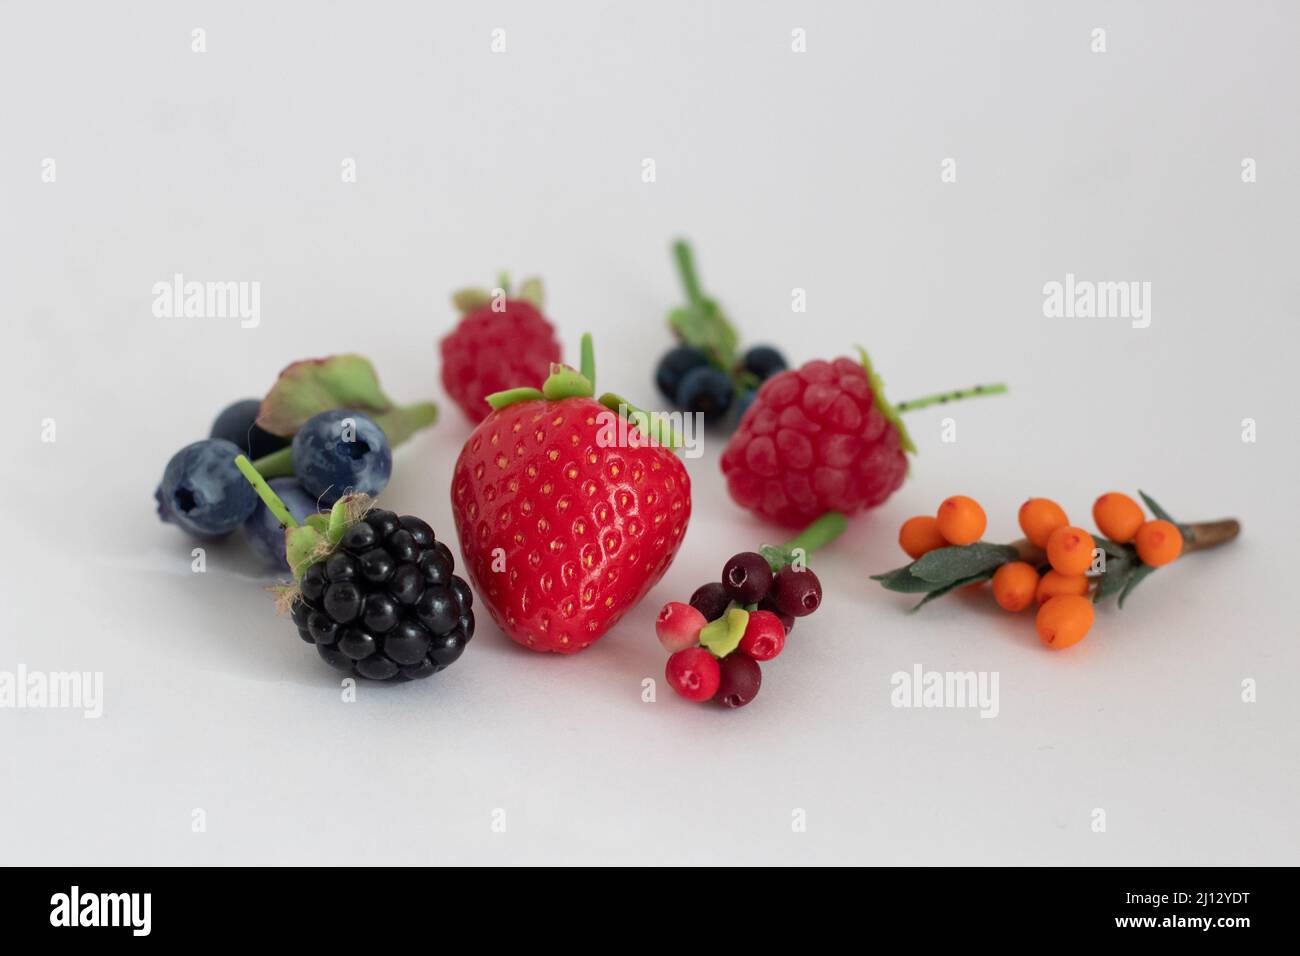 Figuras en miniatura de fresas, moras, frambuesas, arándanos, arándanos, arándanos y arándanos Foto de stock